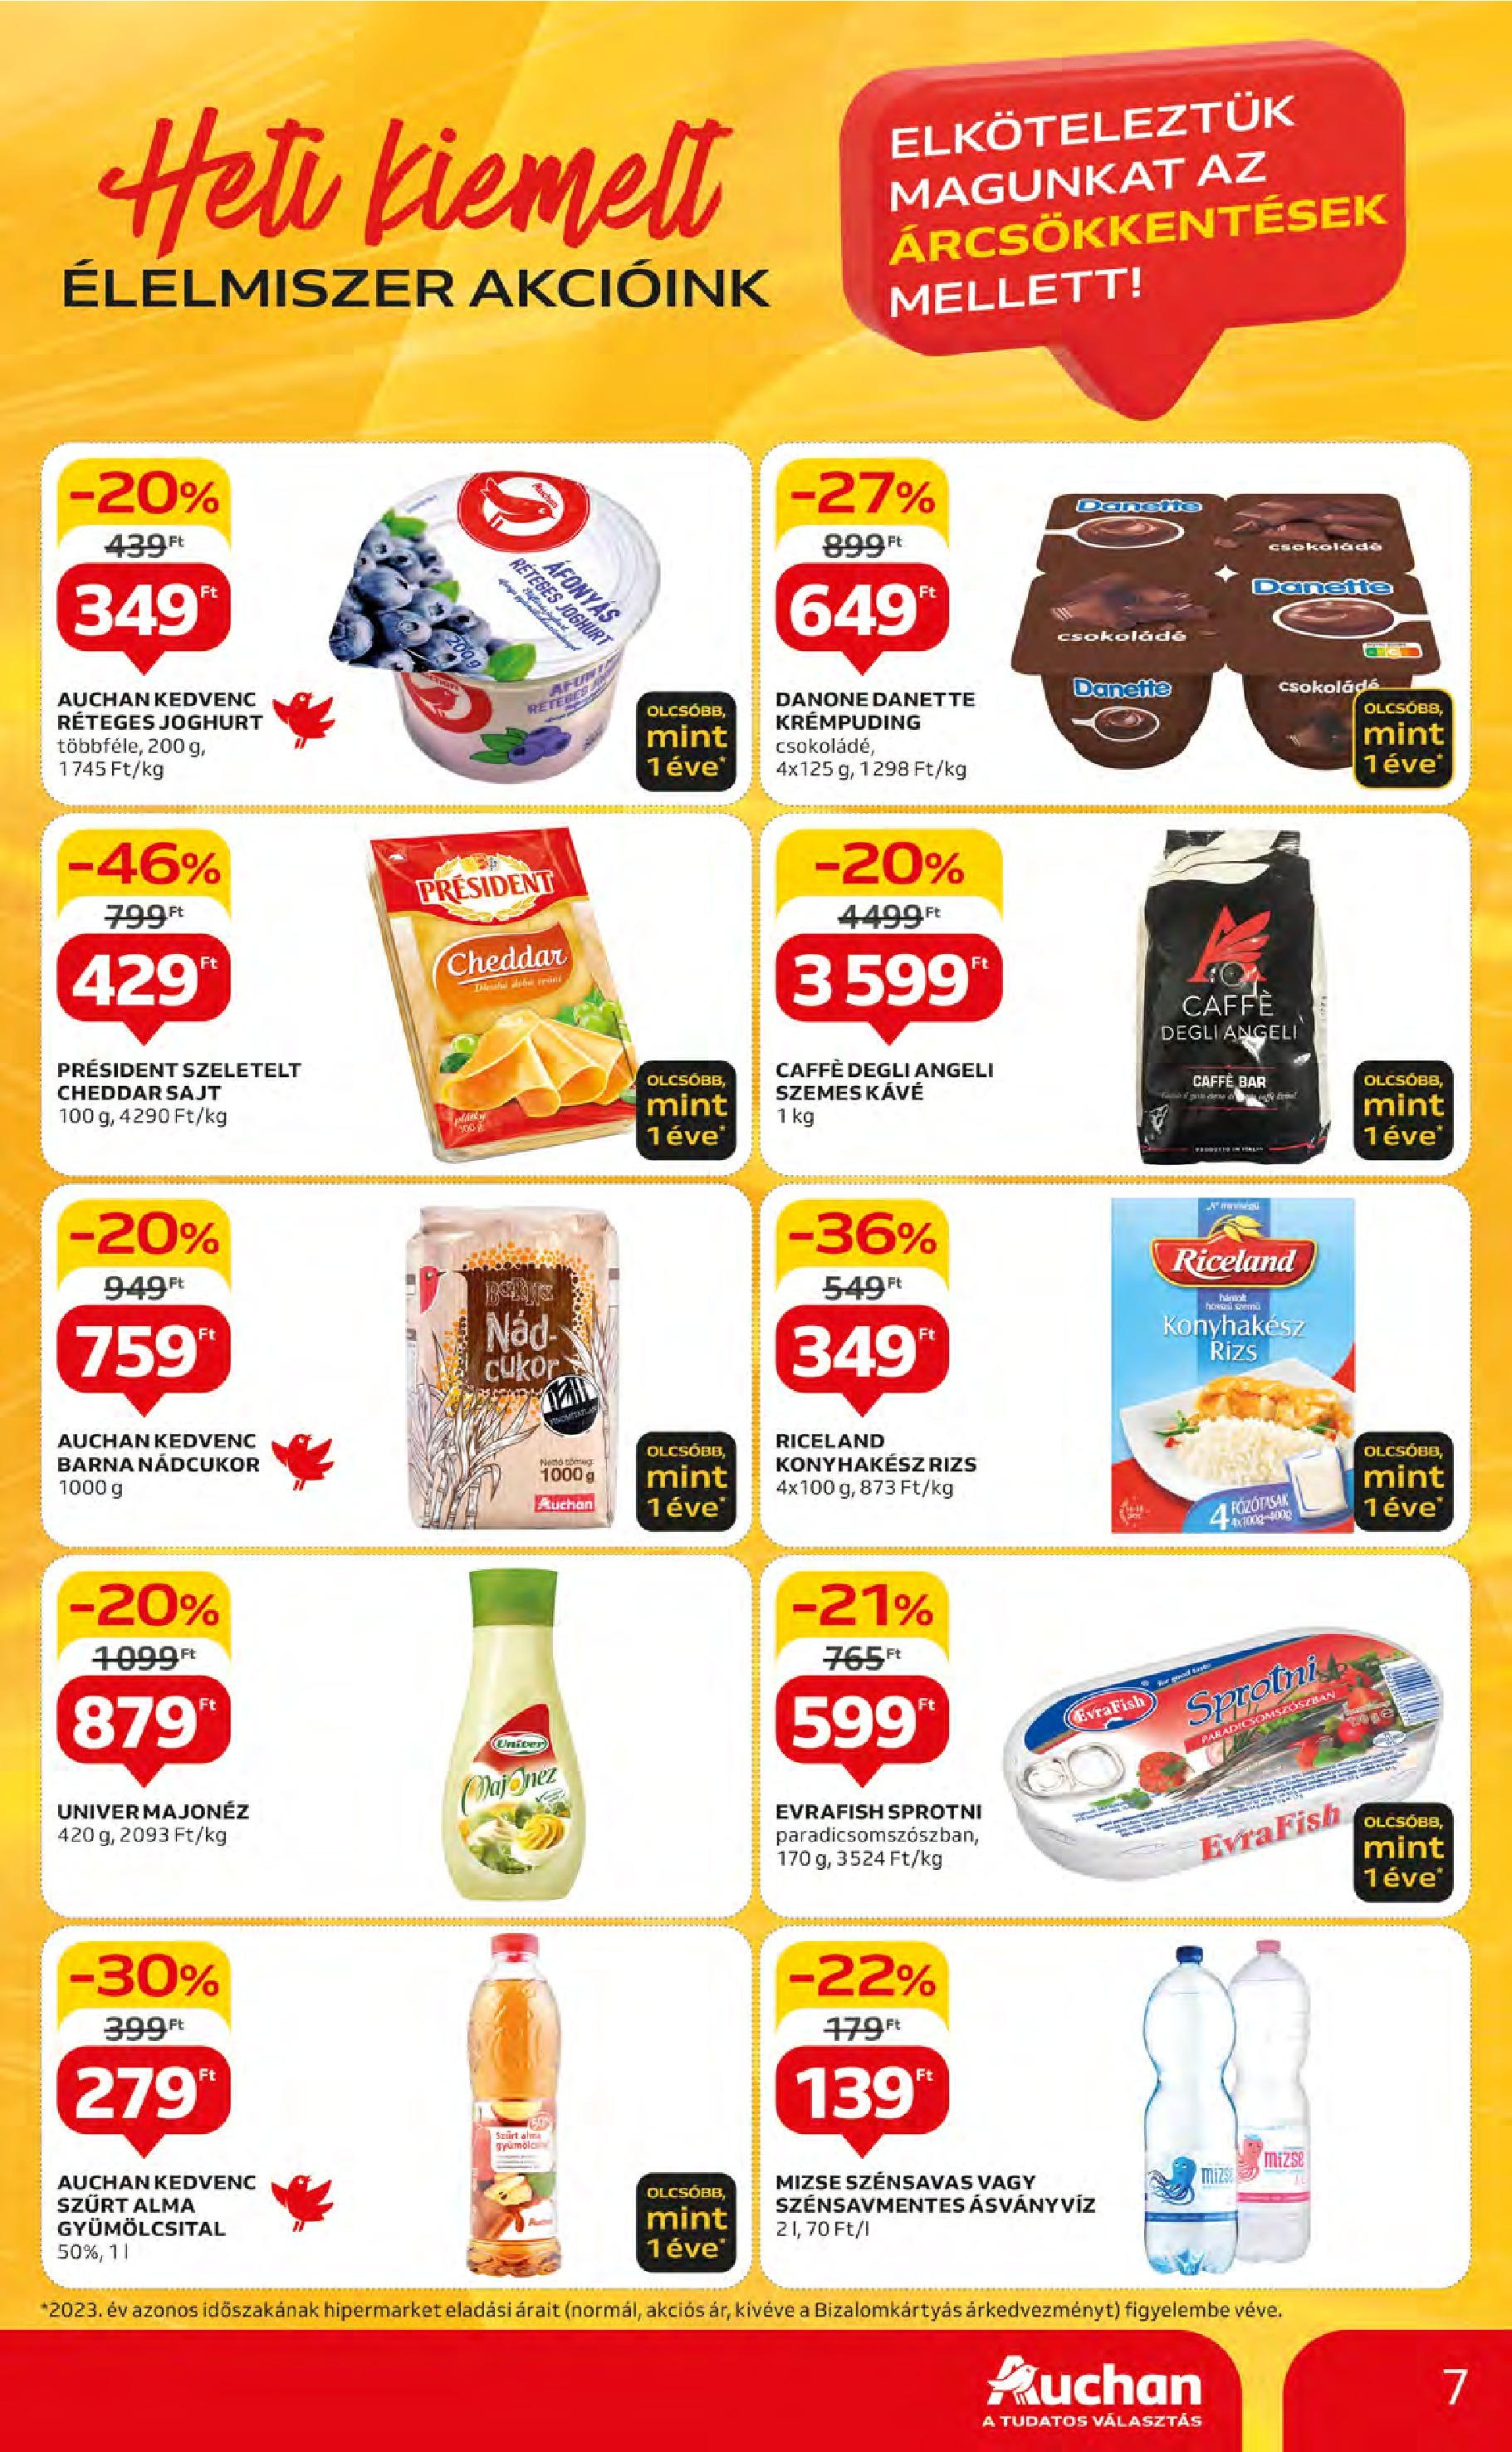 Auchan  Akciós újság - 2024.05.09. -tól/töl > akció, szórólap 🛍️ | Oldal: 7 | Termékek: Gyümölcsital, Nádcukor, Sajt, Cukor